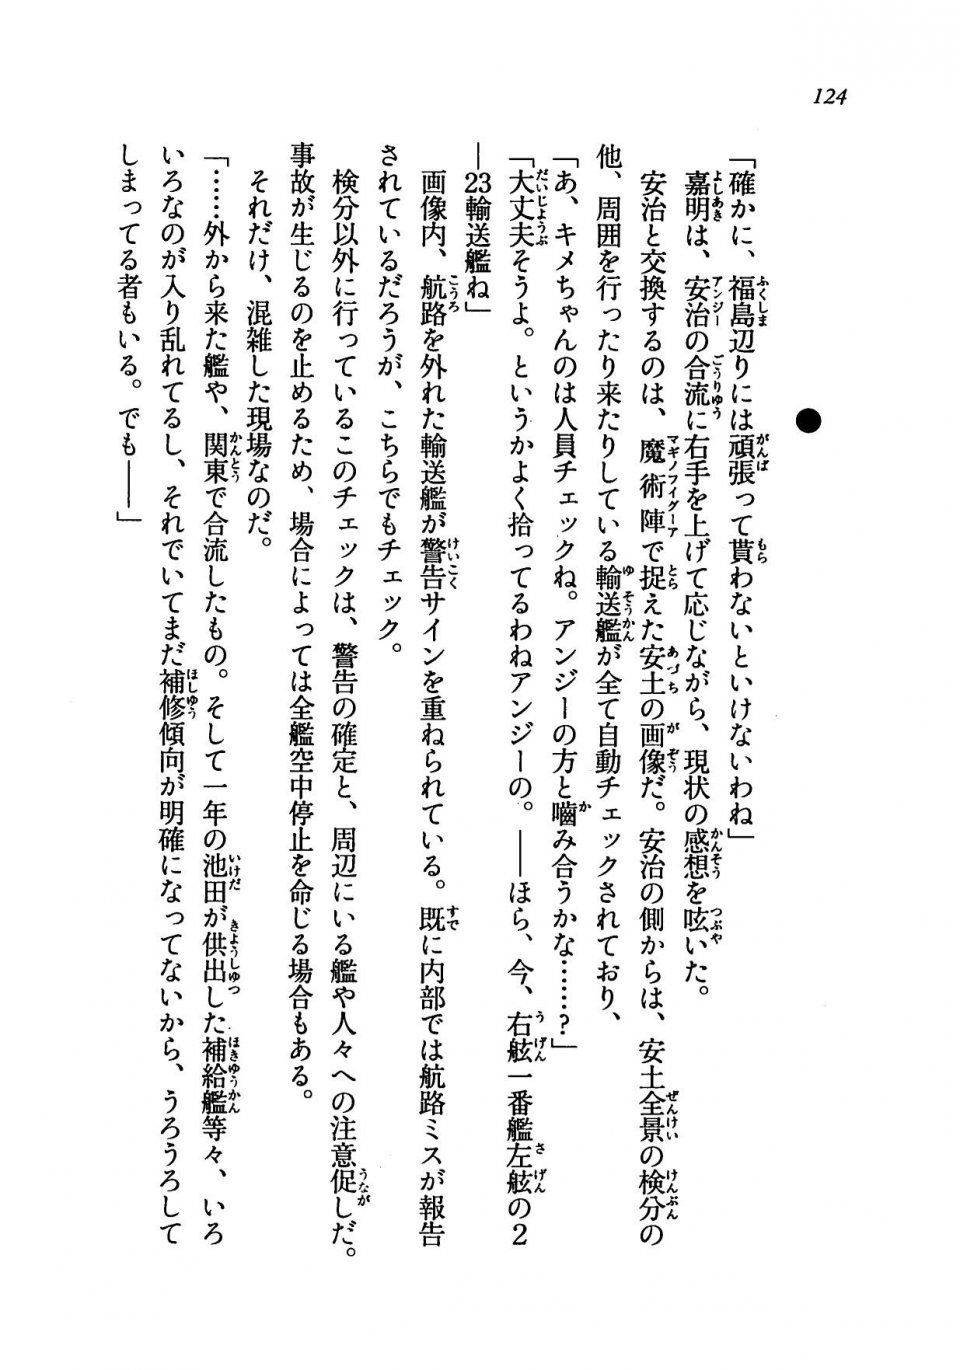 Kyoukai Senjou no Horizon LN Vol 19(8A) - Photo #124